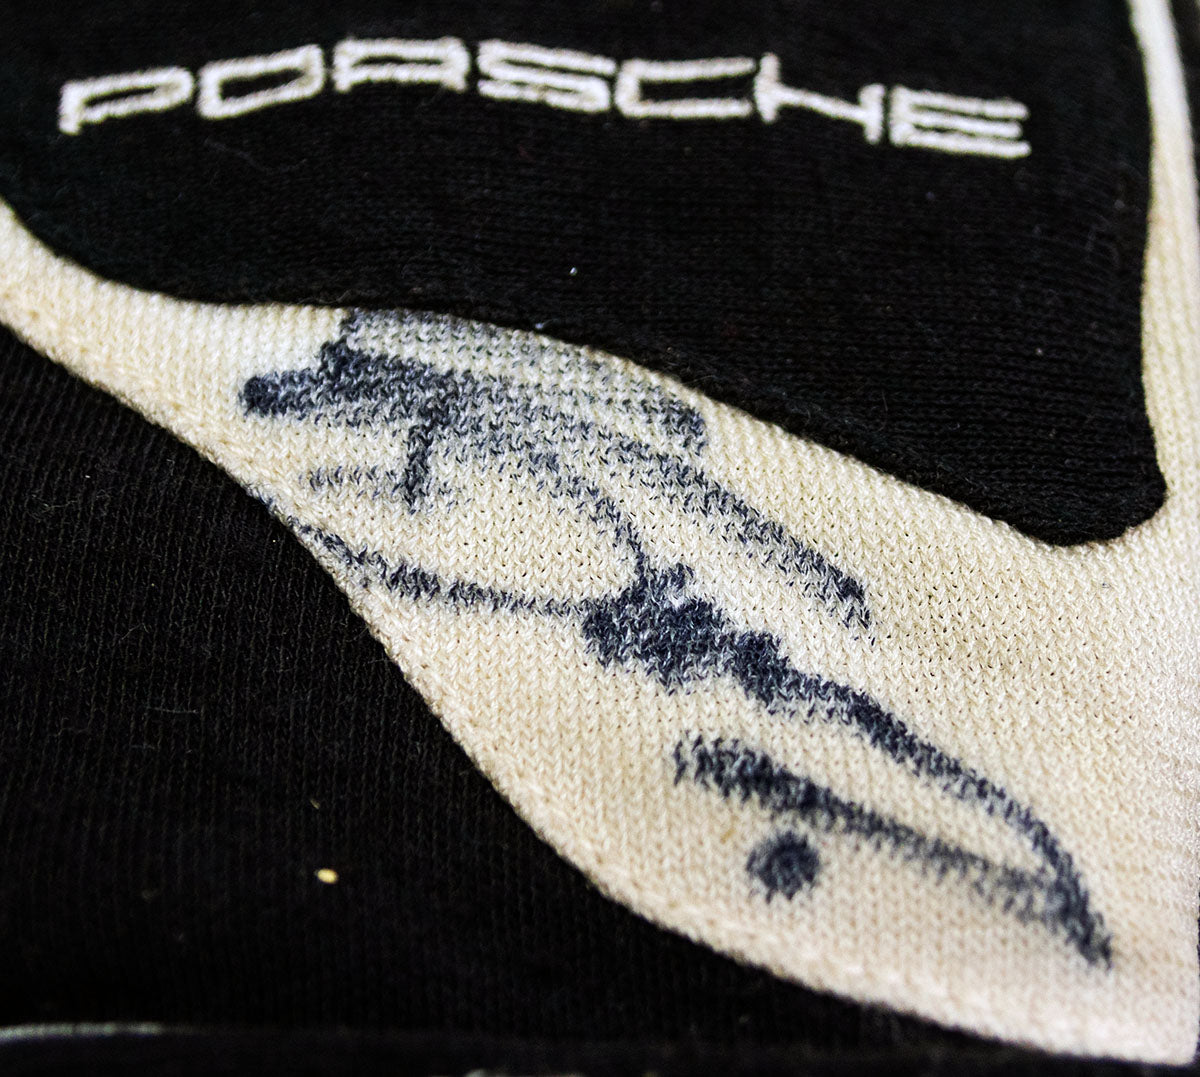 2007/08 Romain Dumas Signed Penske Porsche RS Spyder ALMS Gloves